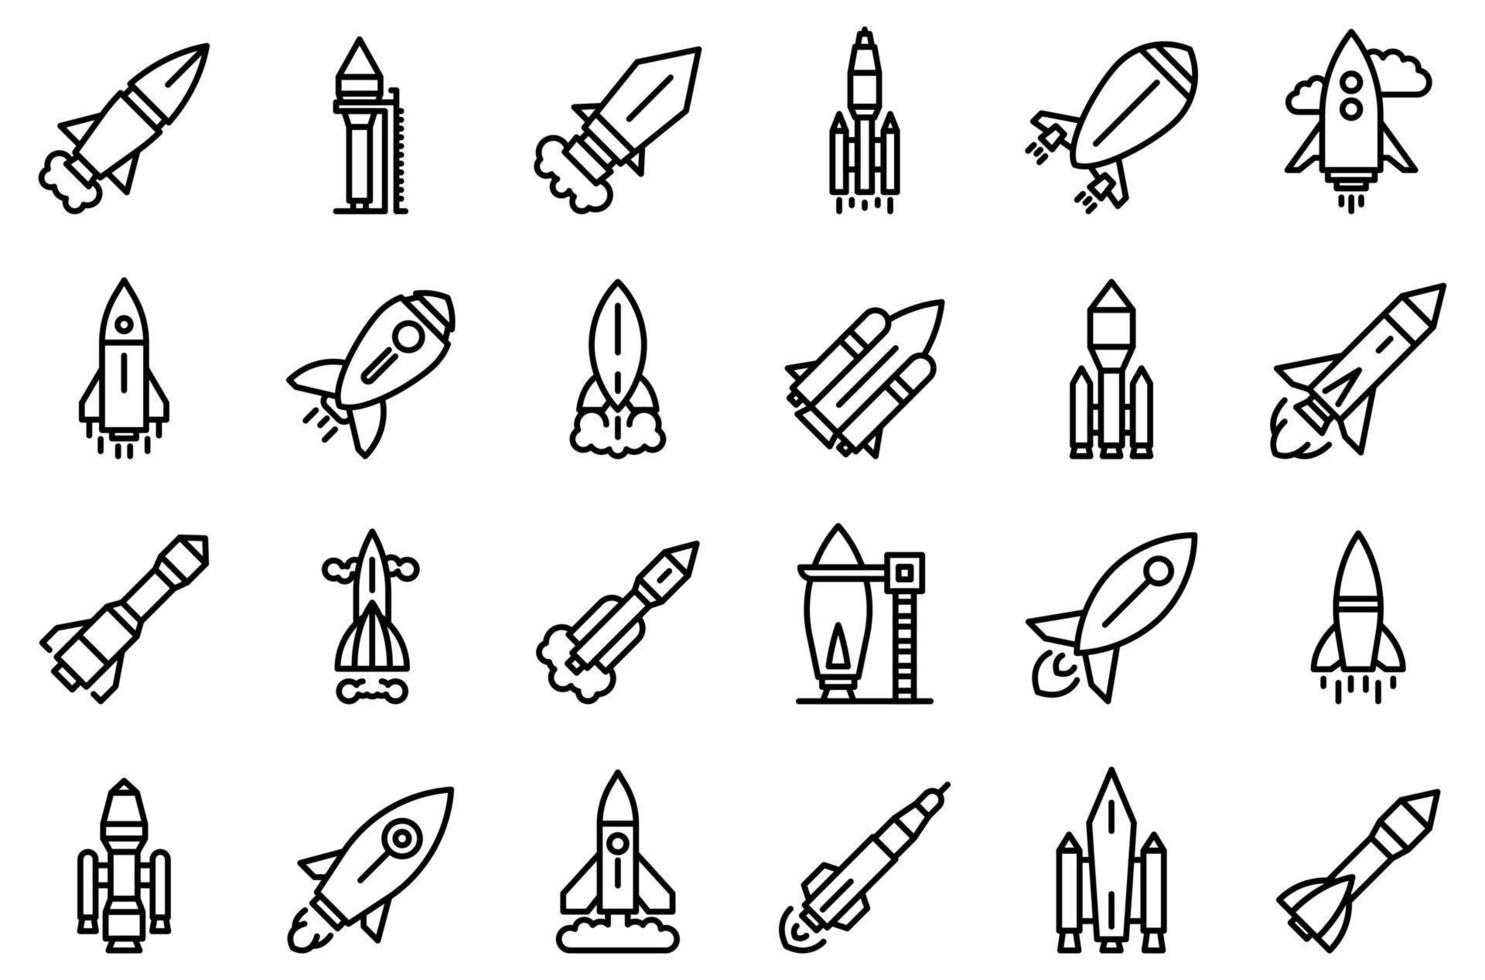 ruimtevaartuig lancering iconen set, Kaderstijl vector